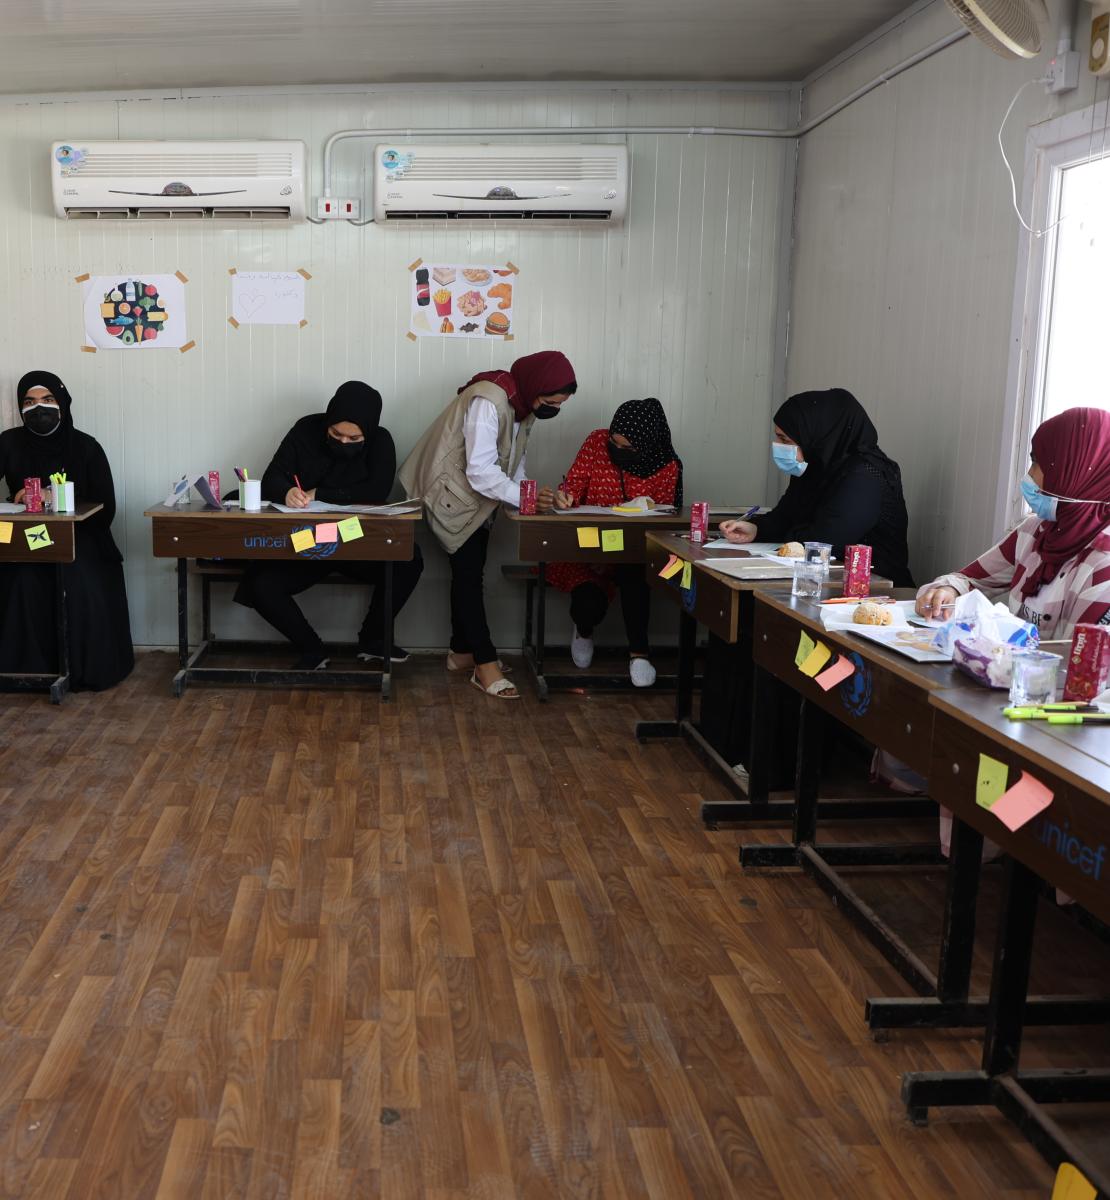 تعمل مجموعة من النساء على مقاعد بوجود مدرسة تساعد طالبة واحدة.